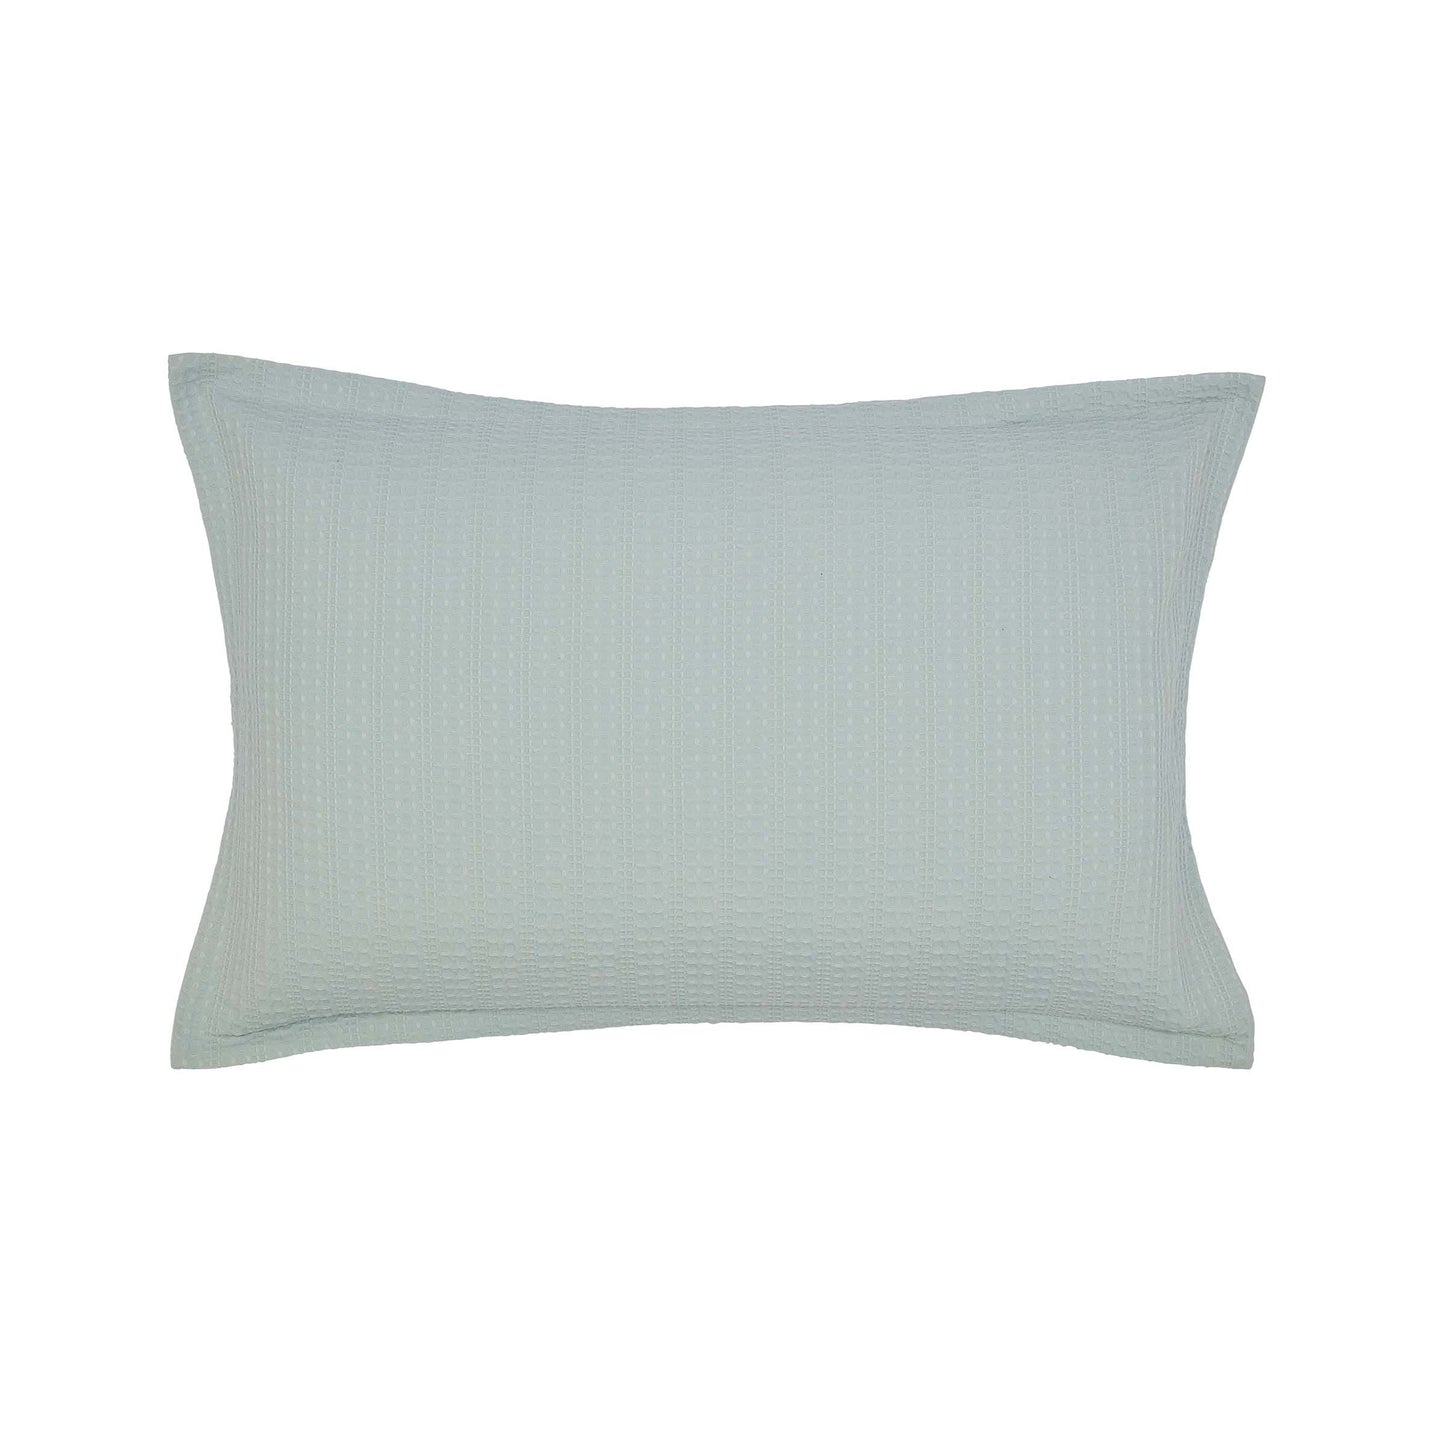 Dabble Oxford Pillowcase, Lough Green